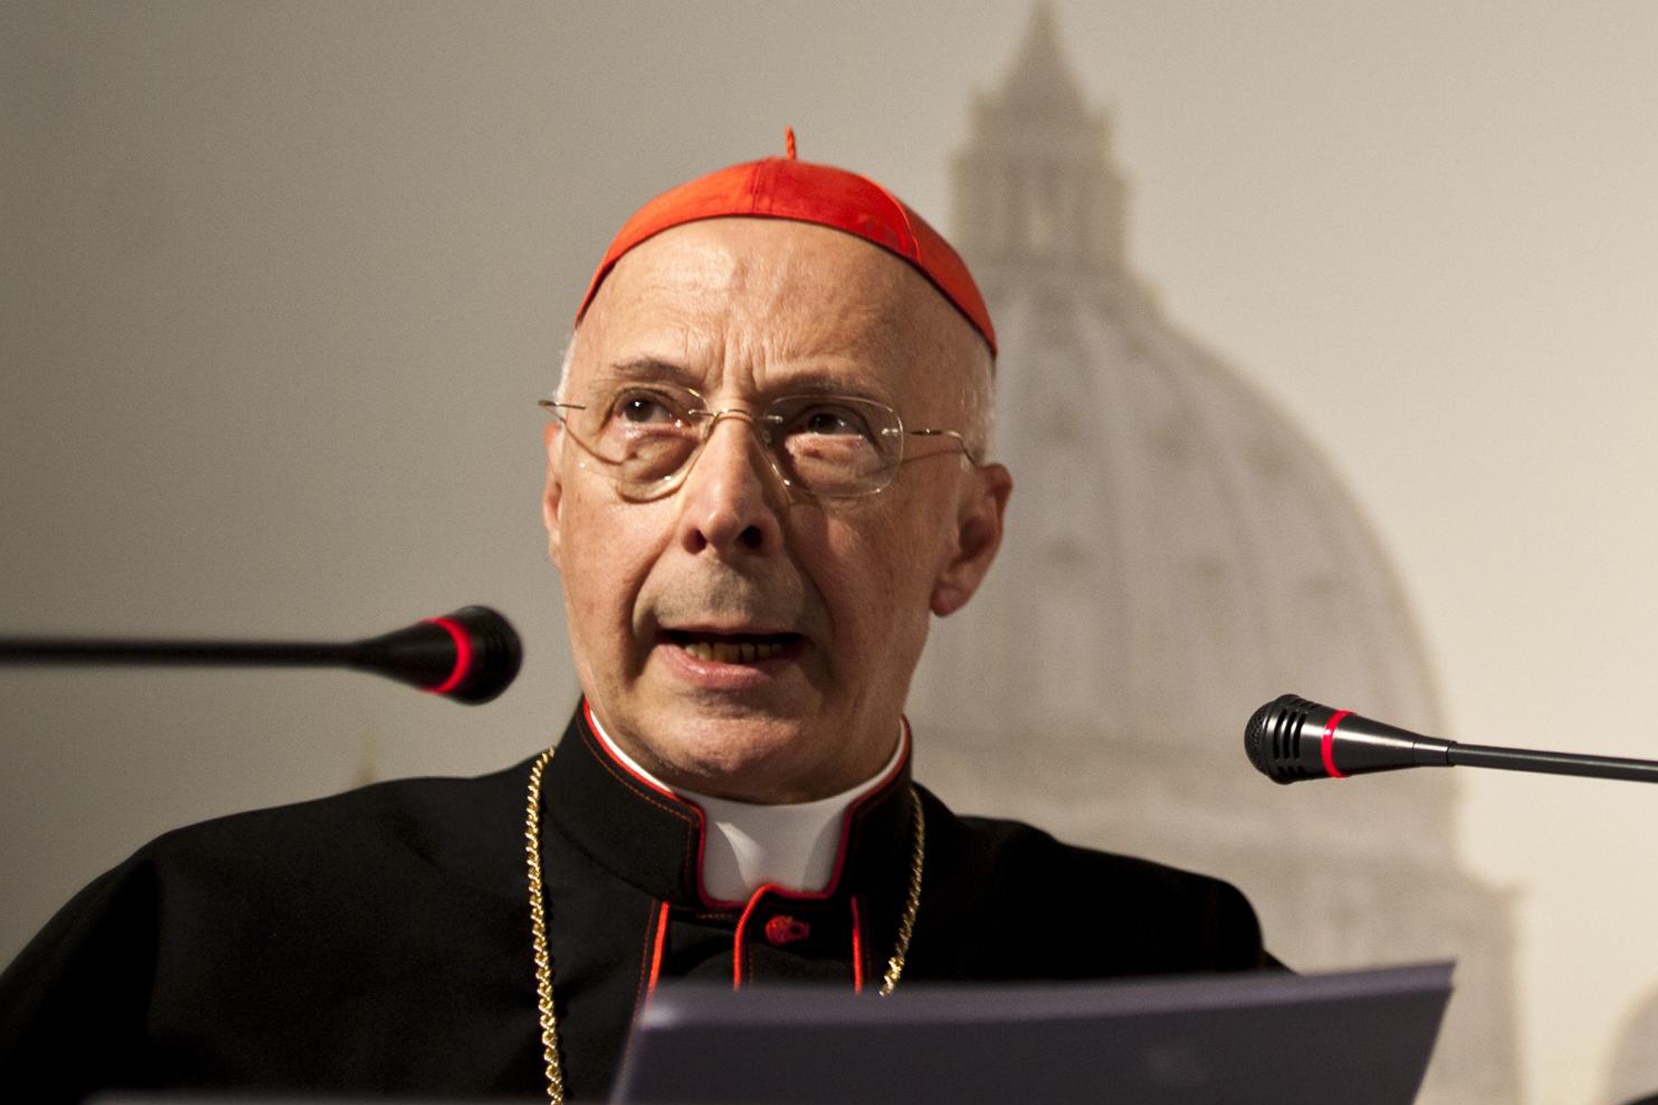 Кард. Баньяско назвал «дьявольской» идею о разногласии между Папой и остальной Церковью